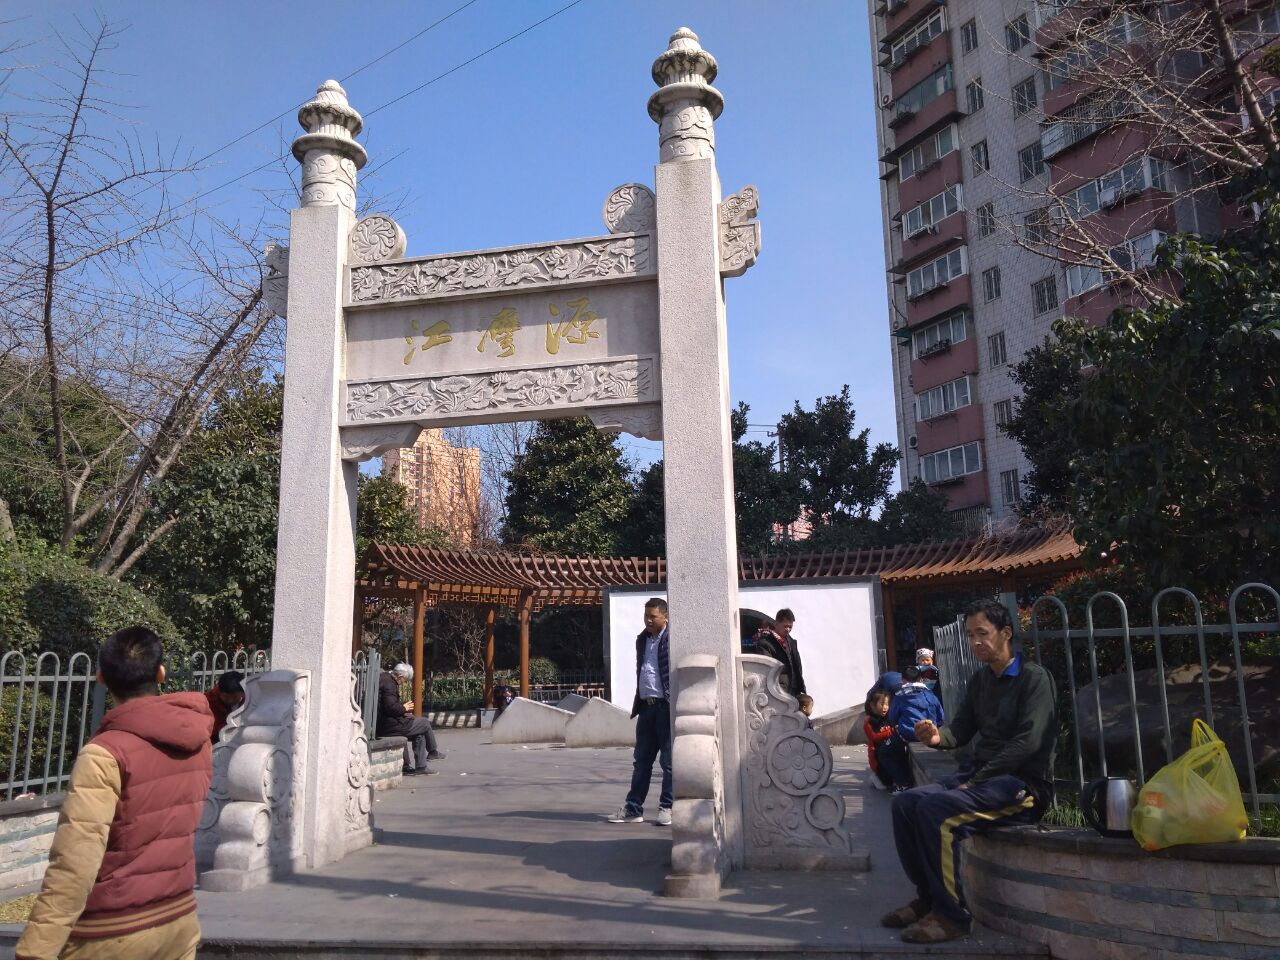 【携程攻略】上海江湾古镇景点,上海市虹口区江湾古镇,是一个有悠久